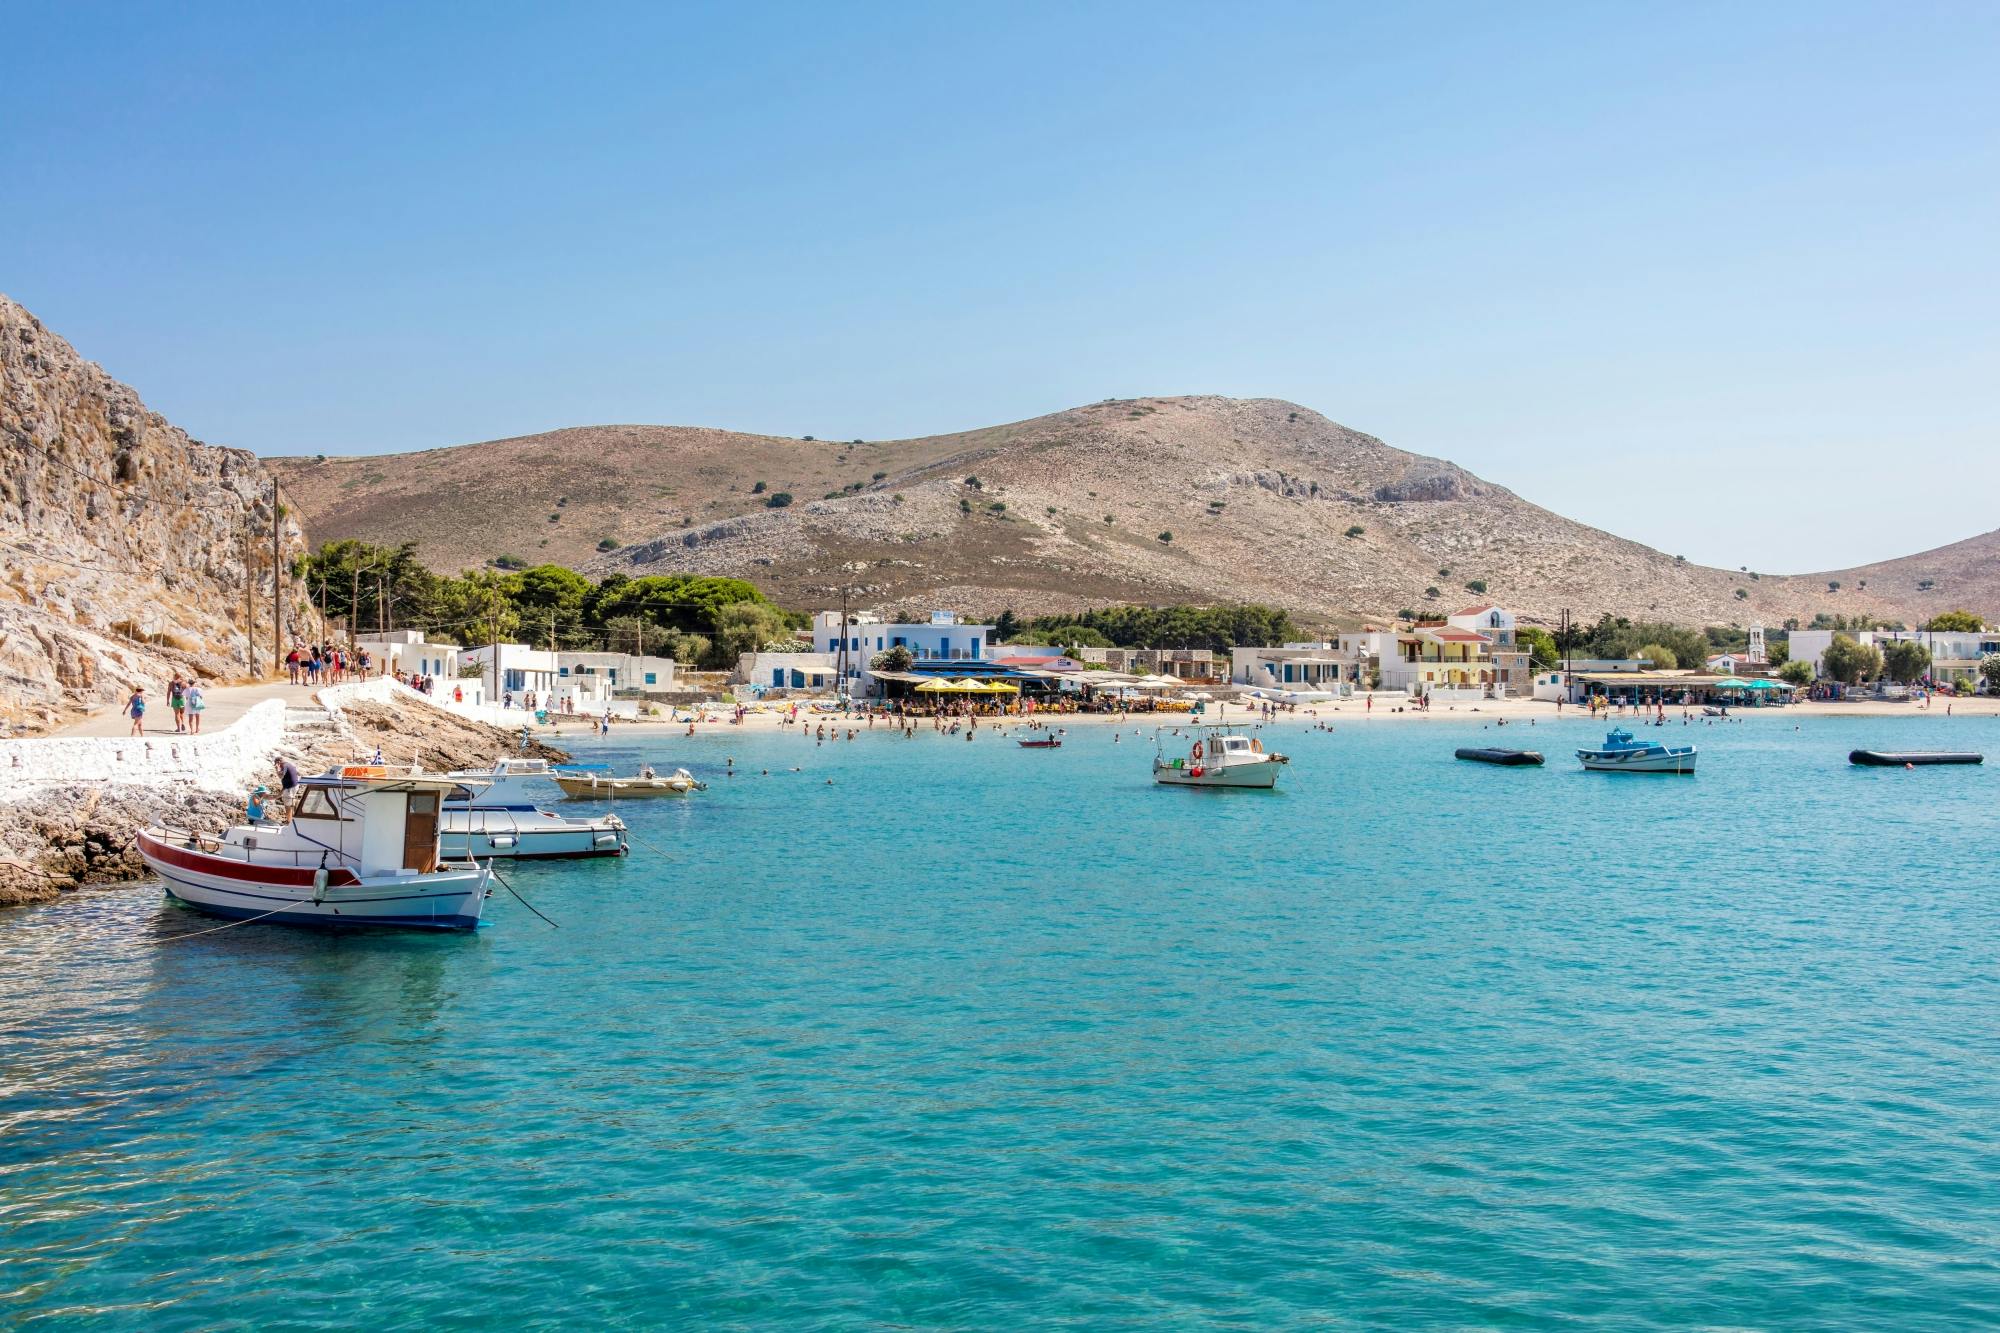 Crociera nel Mar Egeo con l'isola di Kalymnos